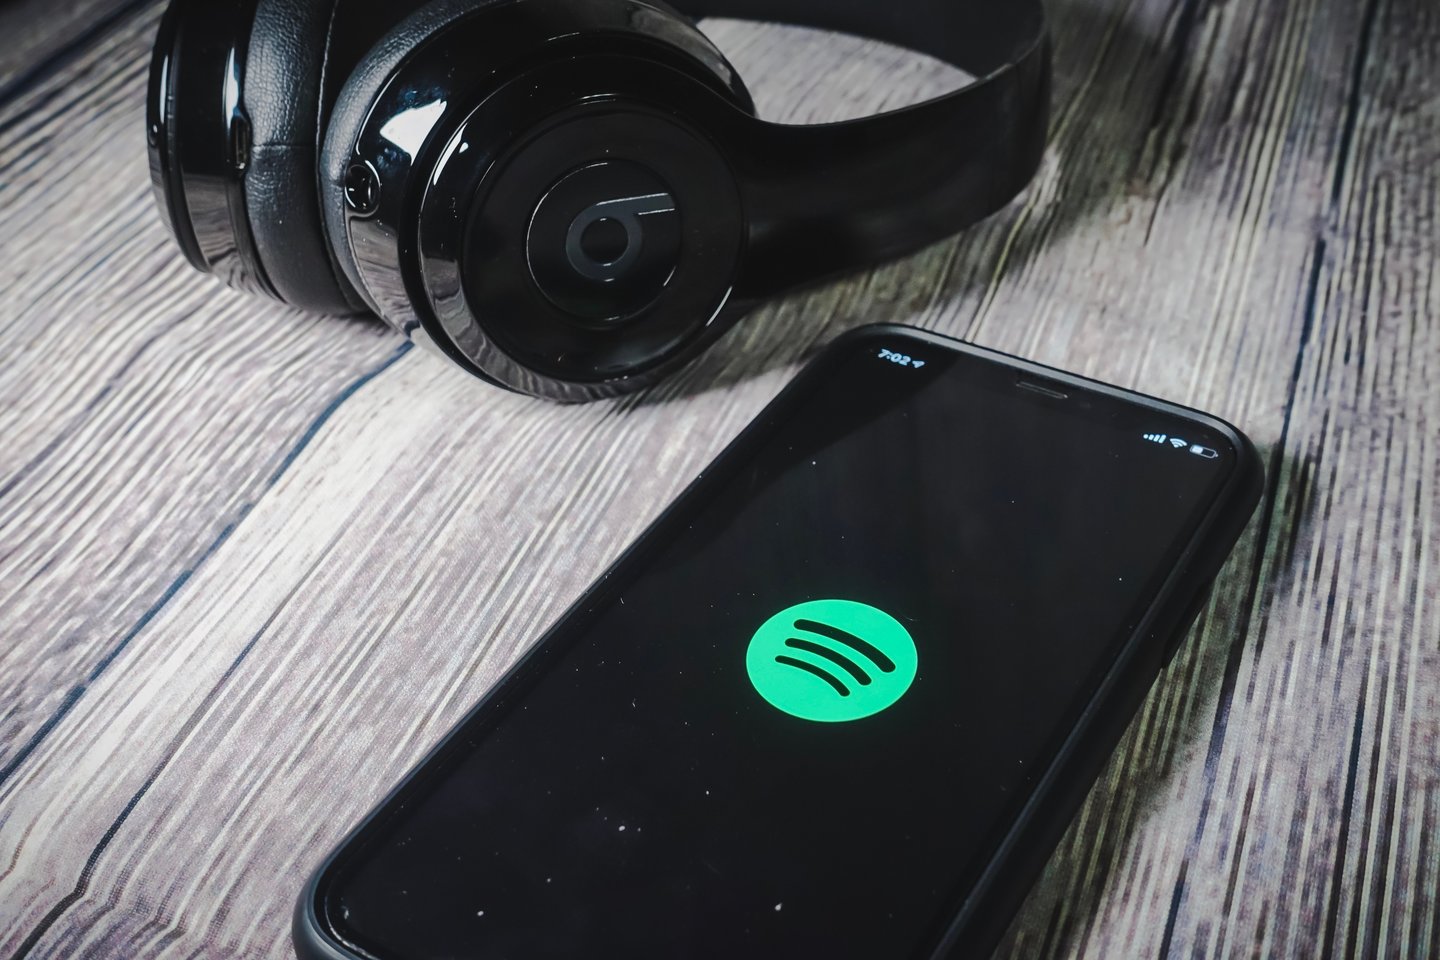  Muzikos transliavimo internetu milžinė „Spotify“ trečiadienį paskelbė uždariusi savo biurą Rusijoje ir pašalinusi iš savo platformos šios šalies valdžios institucijų propaguojamą turinį.<br> 123rf nuotr.